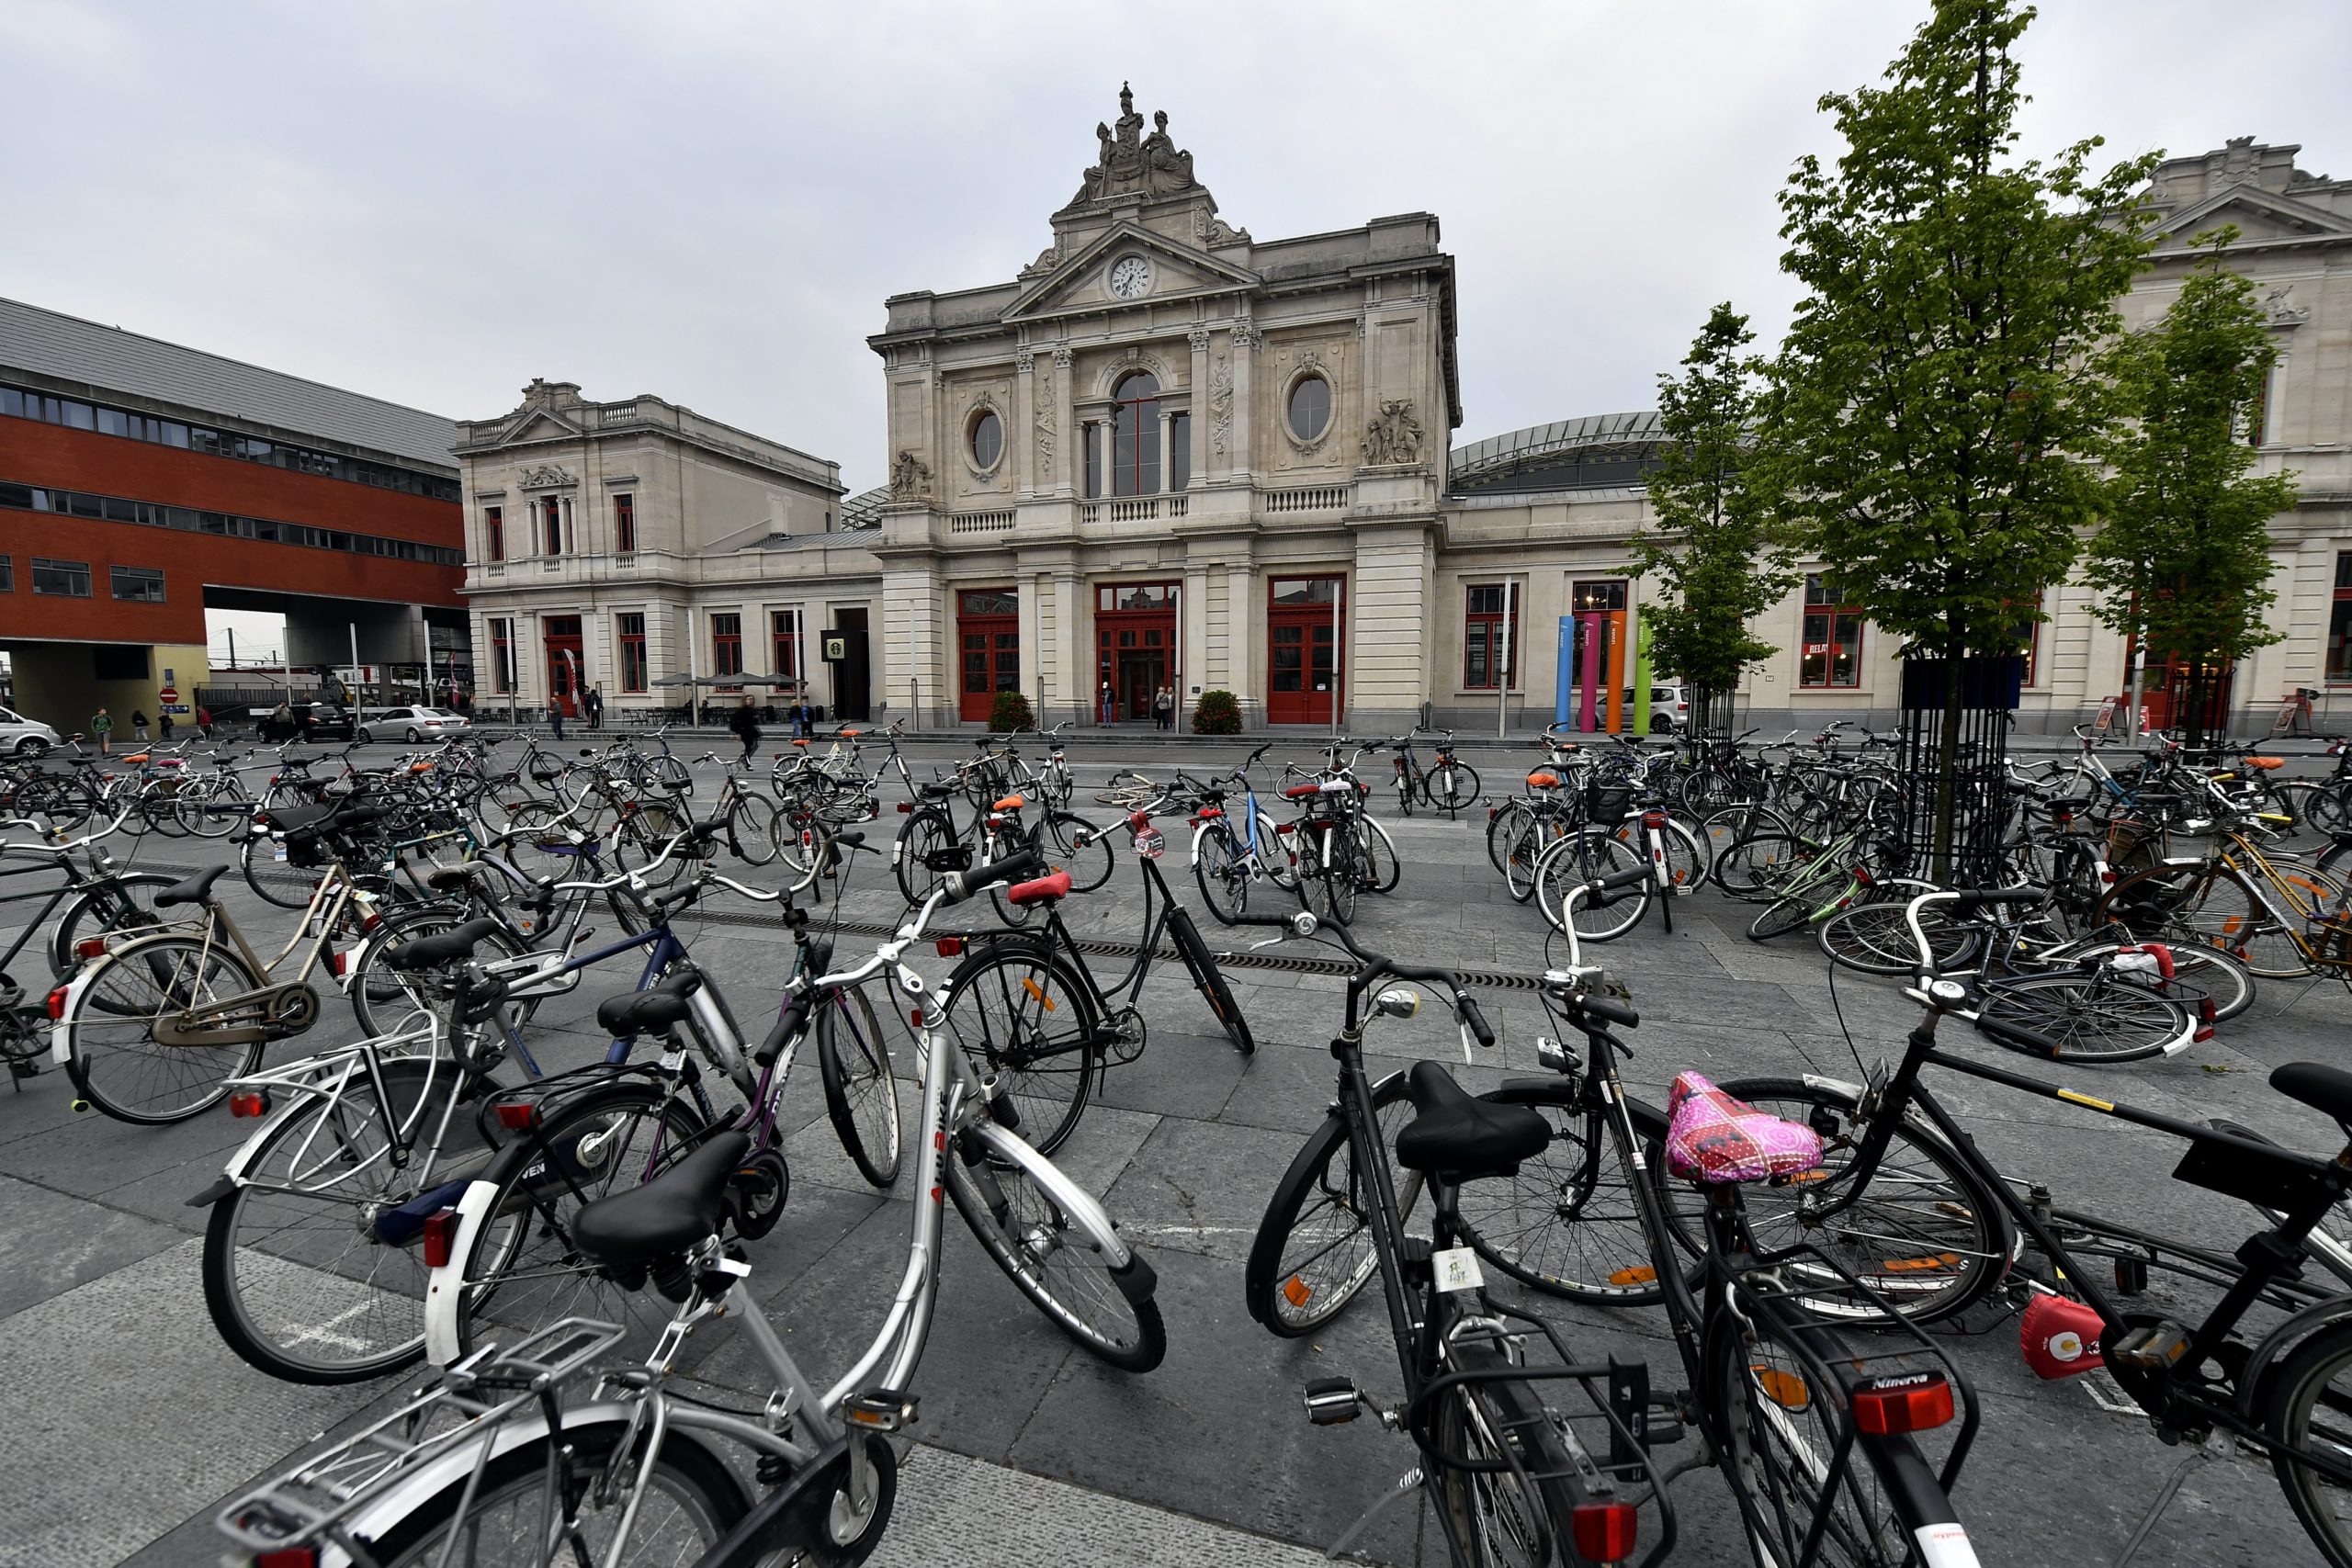 La police de Louvain utilise des vélos-leurres pour attraper les voleurs